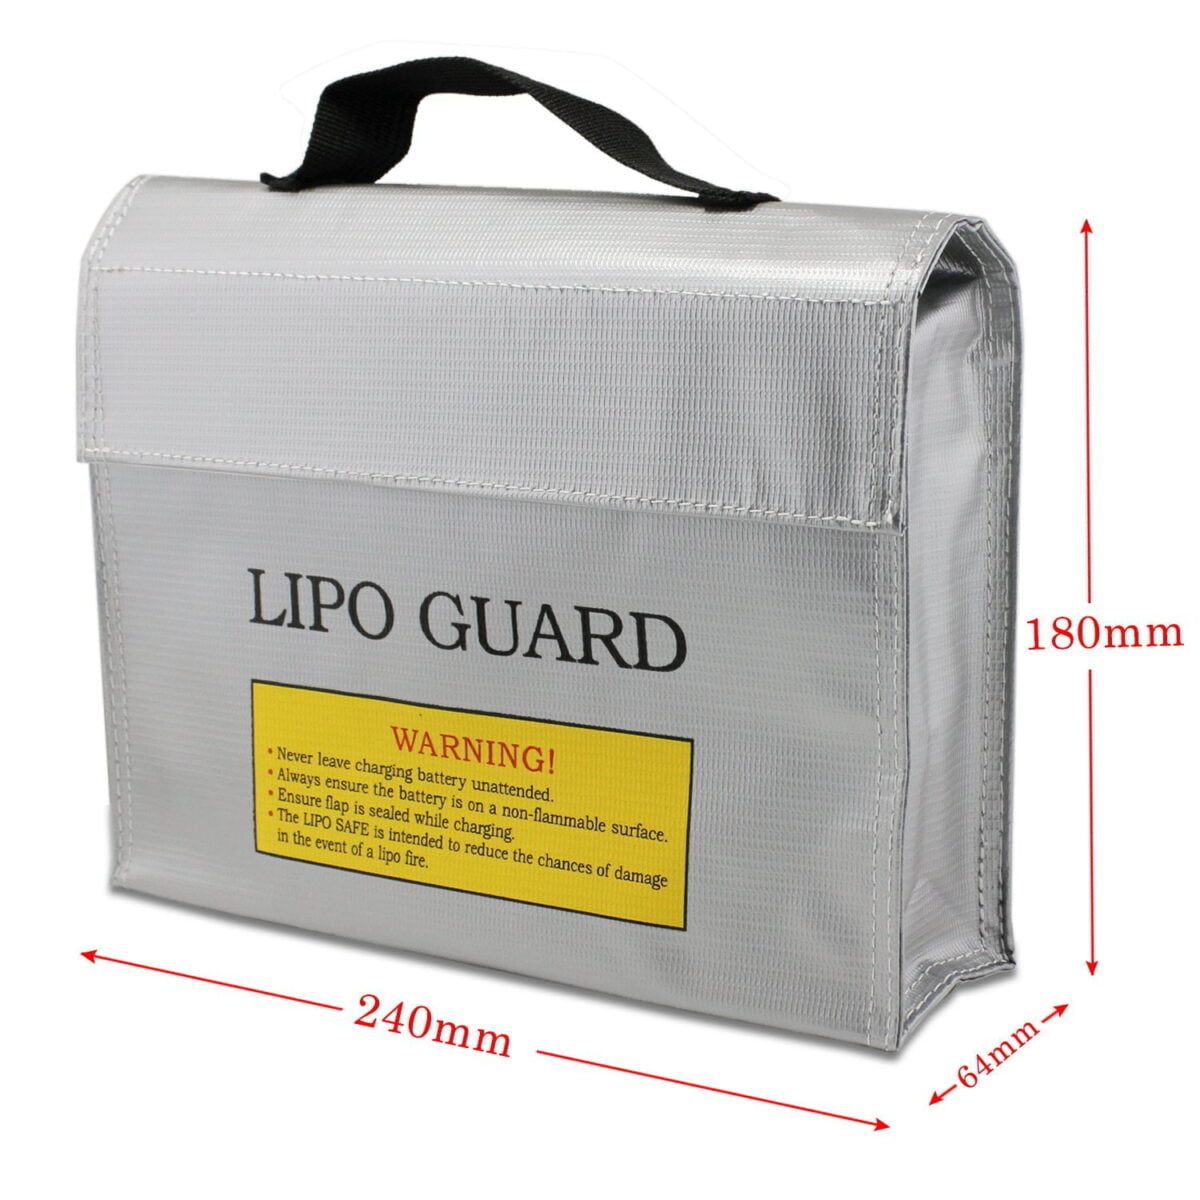 LiPo Guard Bag Fireproof Safety Protection Bag Charger Sack (24186.4cm)